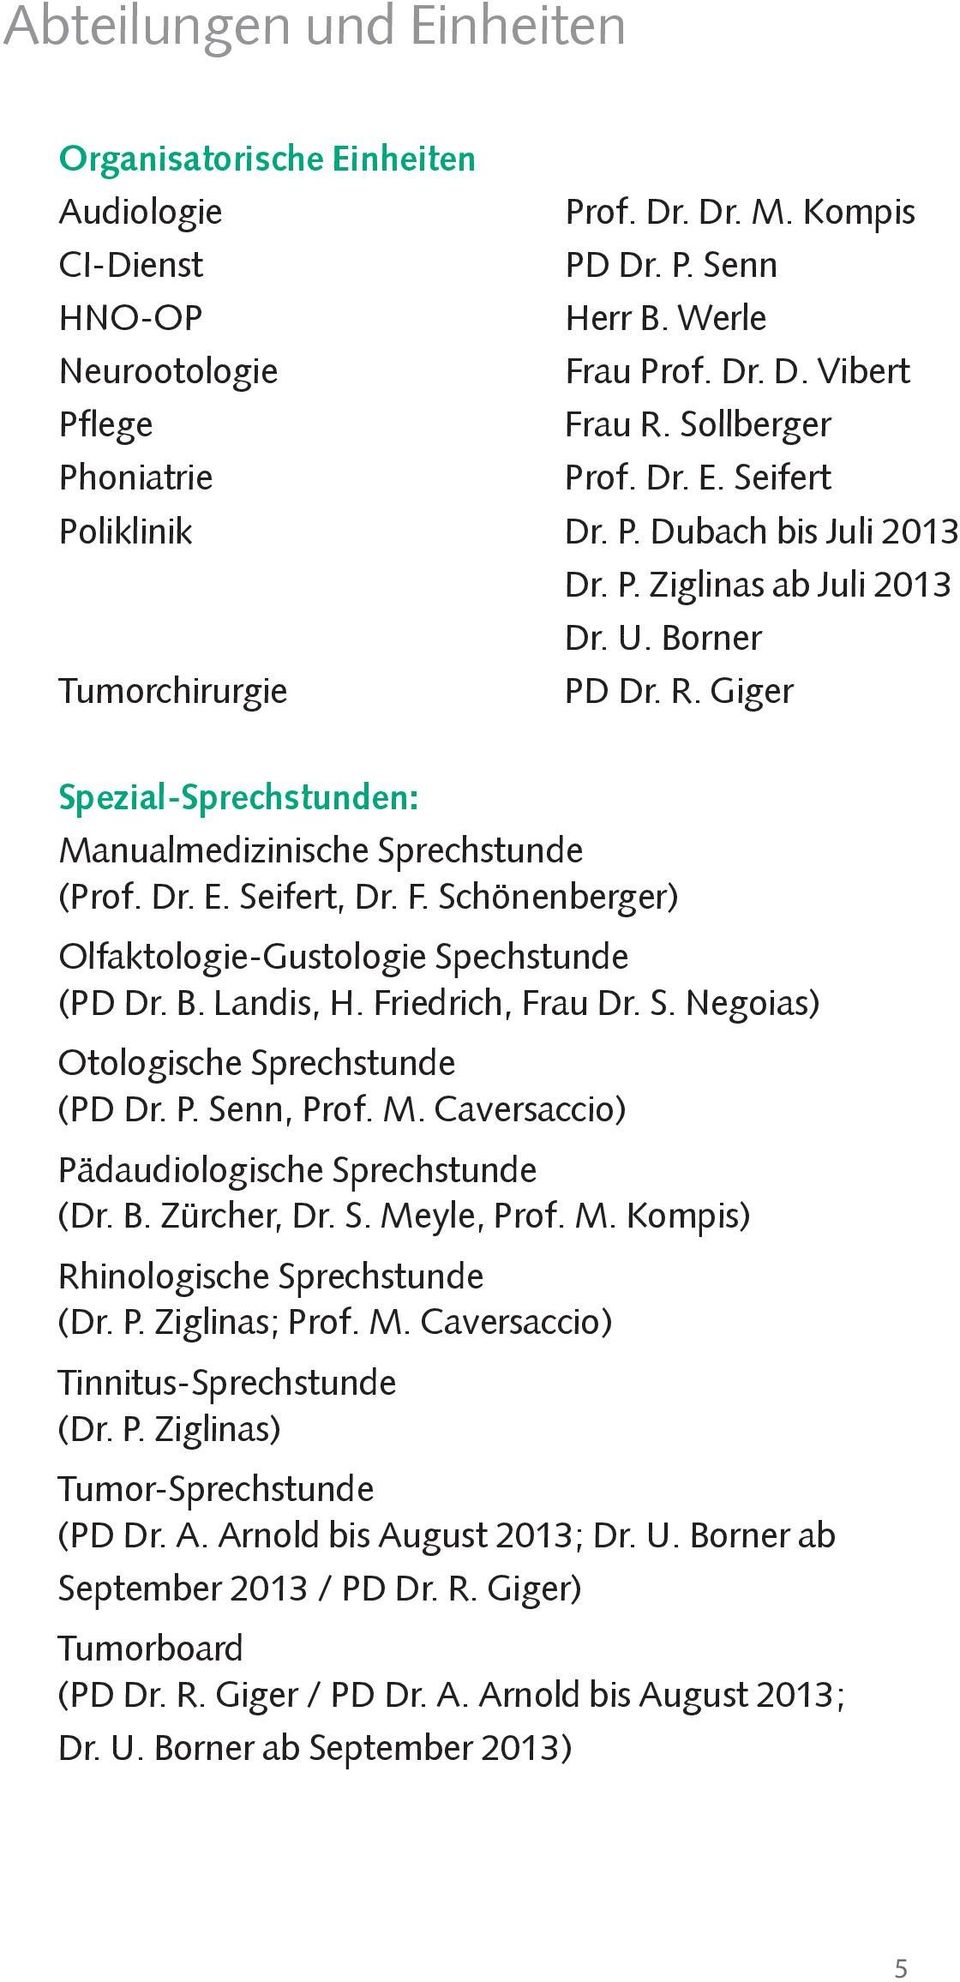 Giger Spezial-Sprechstunden: Manualmedizinische Sprechstunde (Prof. Dr. E. Seifert, Dr. F. Schönenberger) Olfaktologie-Gustologie Spechstunde (PD Dr. B. Landis, H. Friedrich, Frau Dr. S. Negoias) Otologische Sprechstunde (PD Dr.